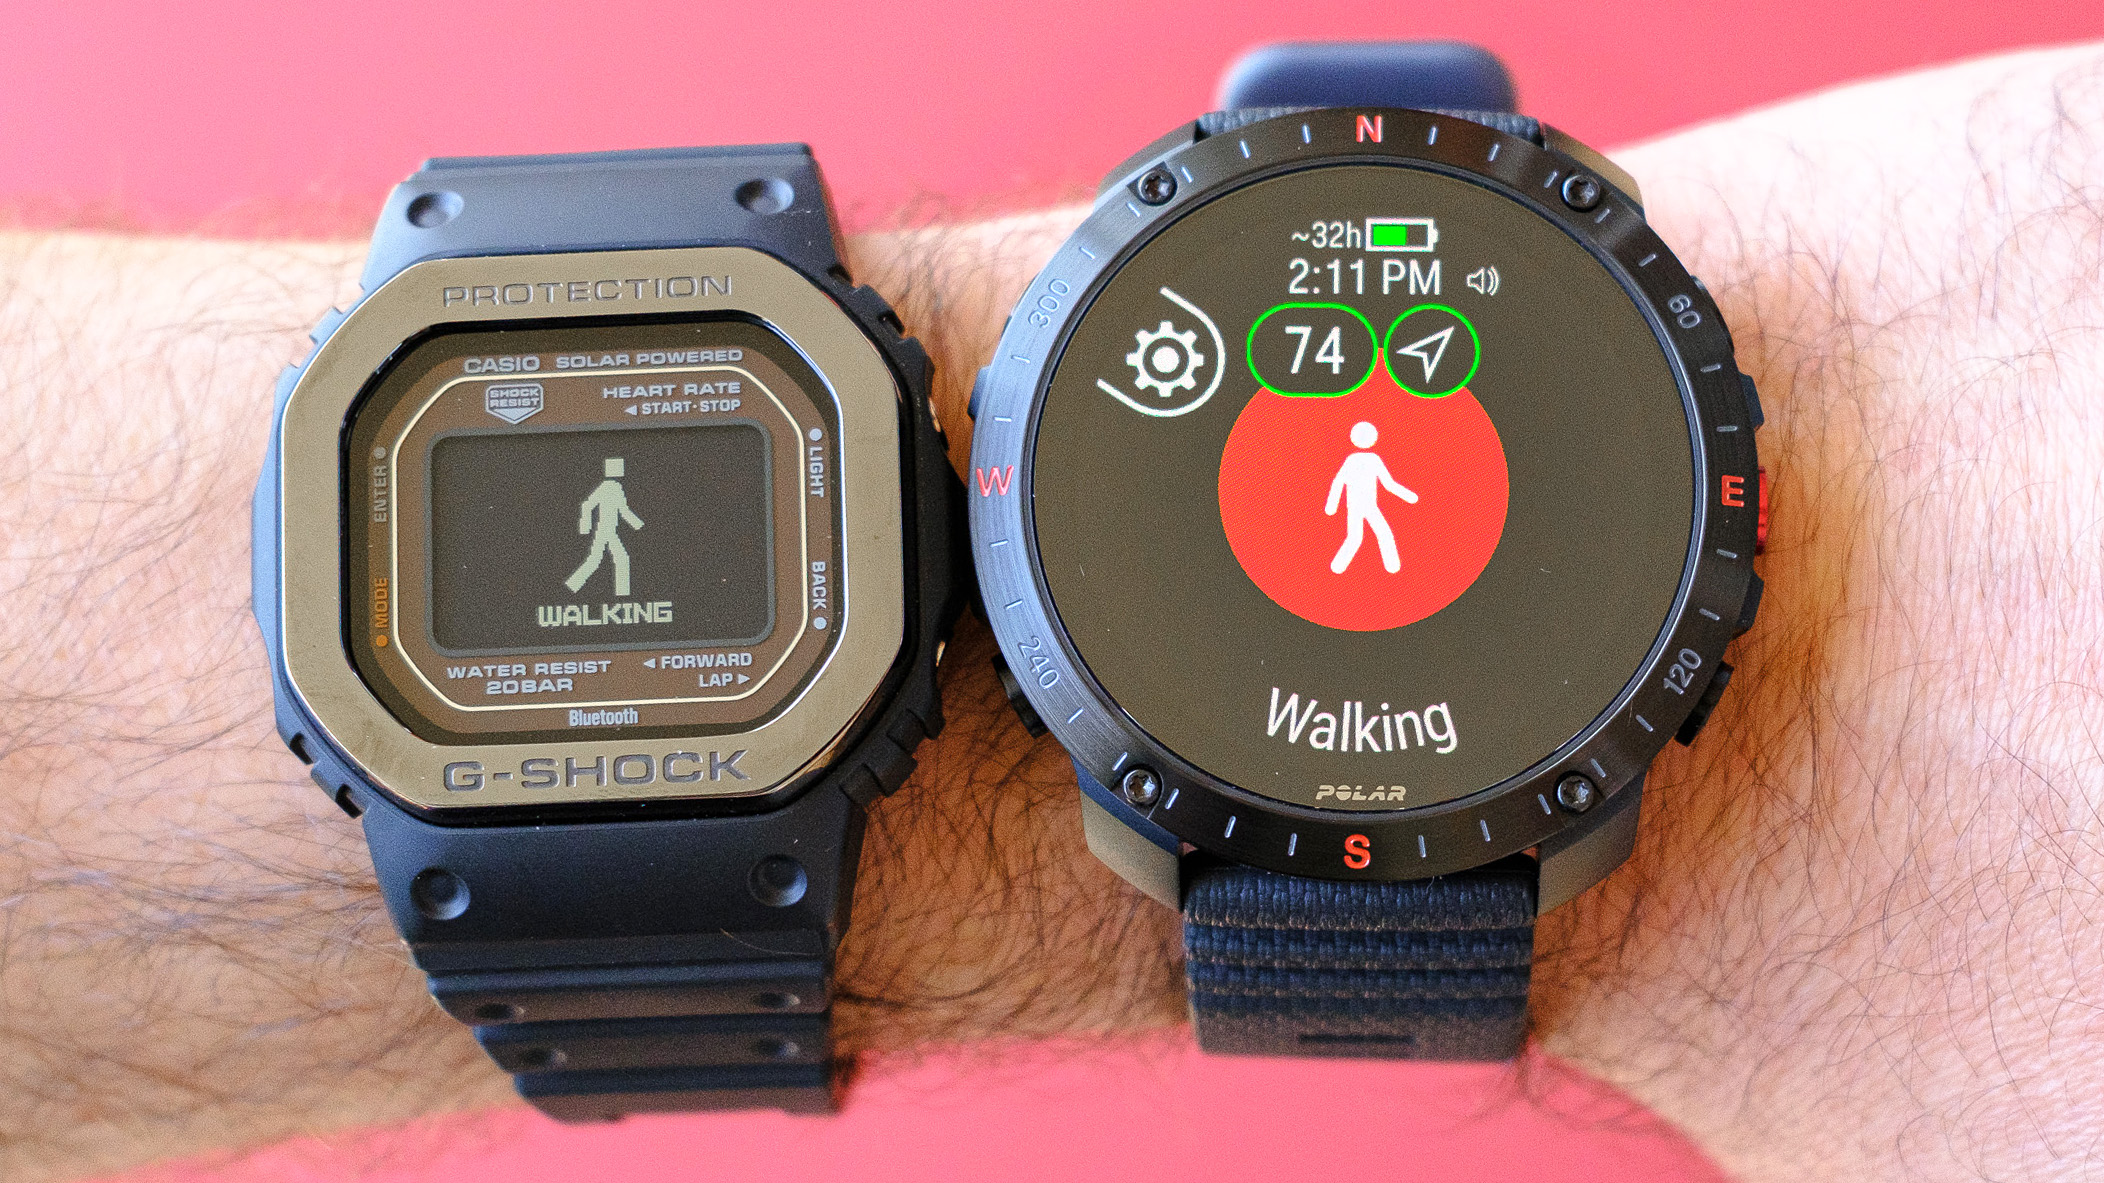 Os smartwatches G-Shock Move e Polar Grit X2 Pro estão no mesmo pulso.